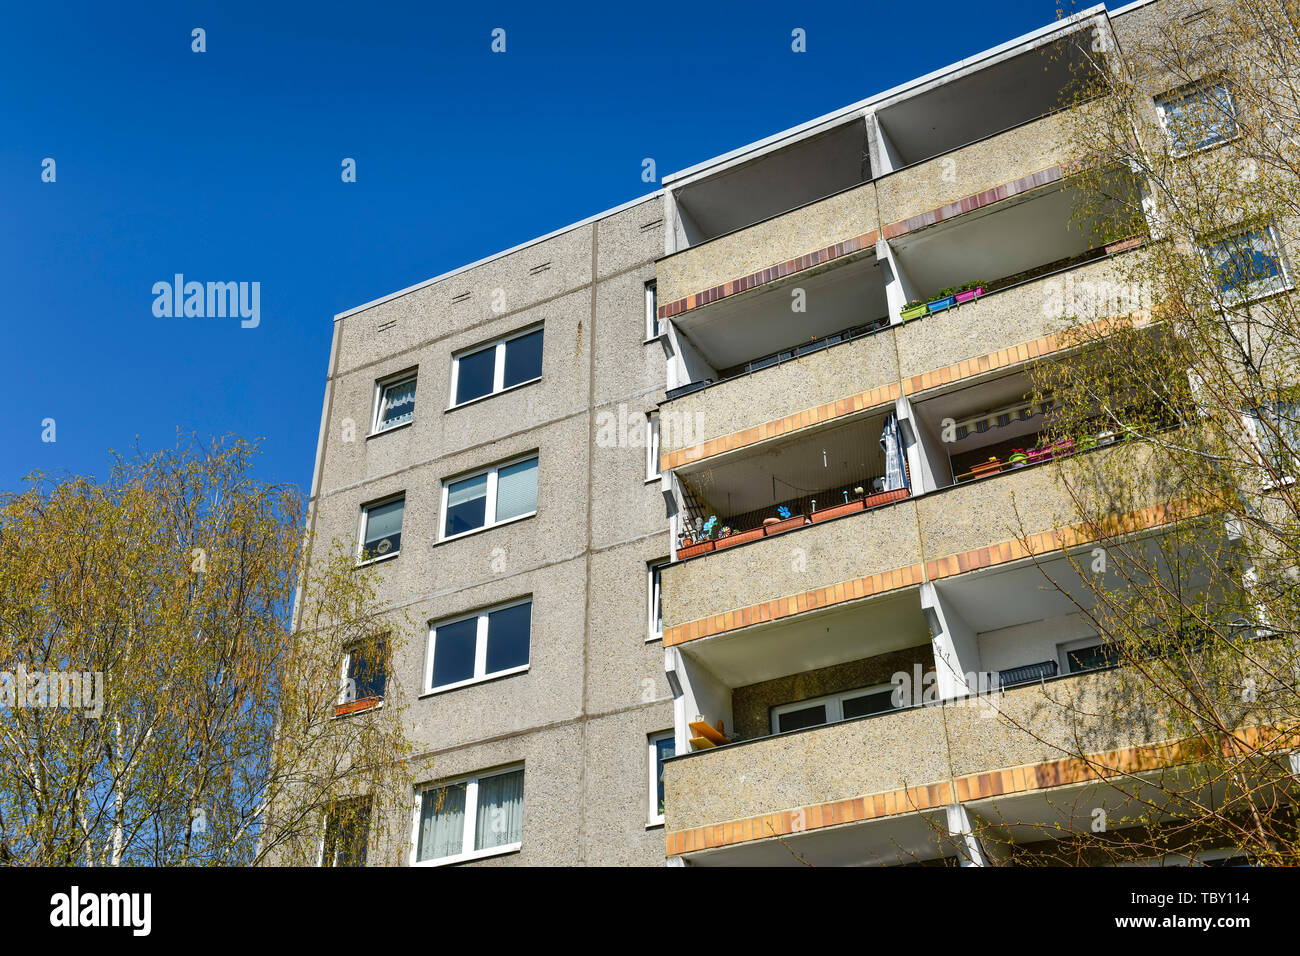 Dwelling house, Venusstrasse, universe quarter, Altglienicke, Treptow-Köpenick, Berlin, Germany, Wohnhaus, Venusstraße, Kosmosviertel, Deutschland Stock Photo